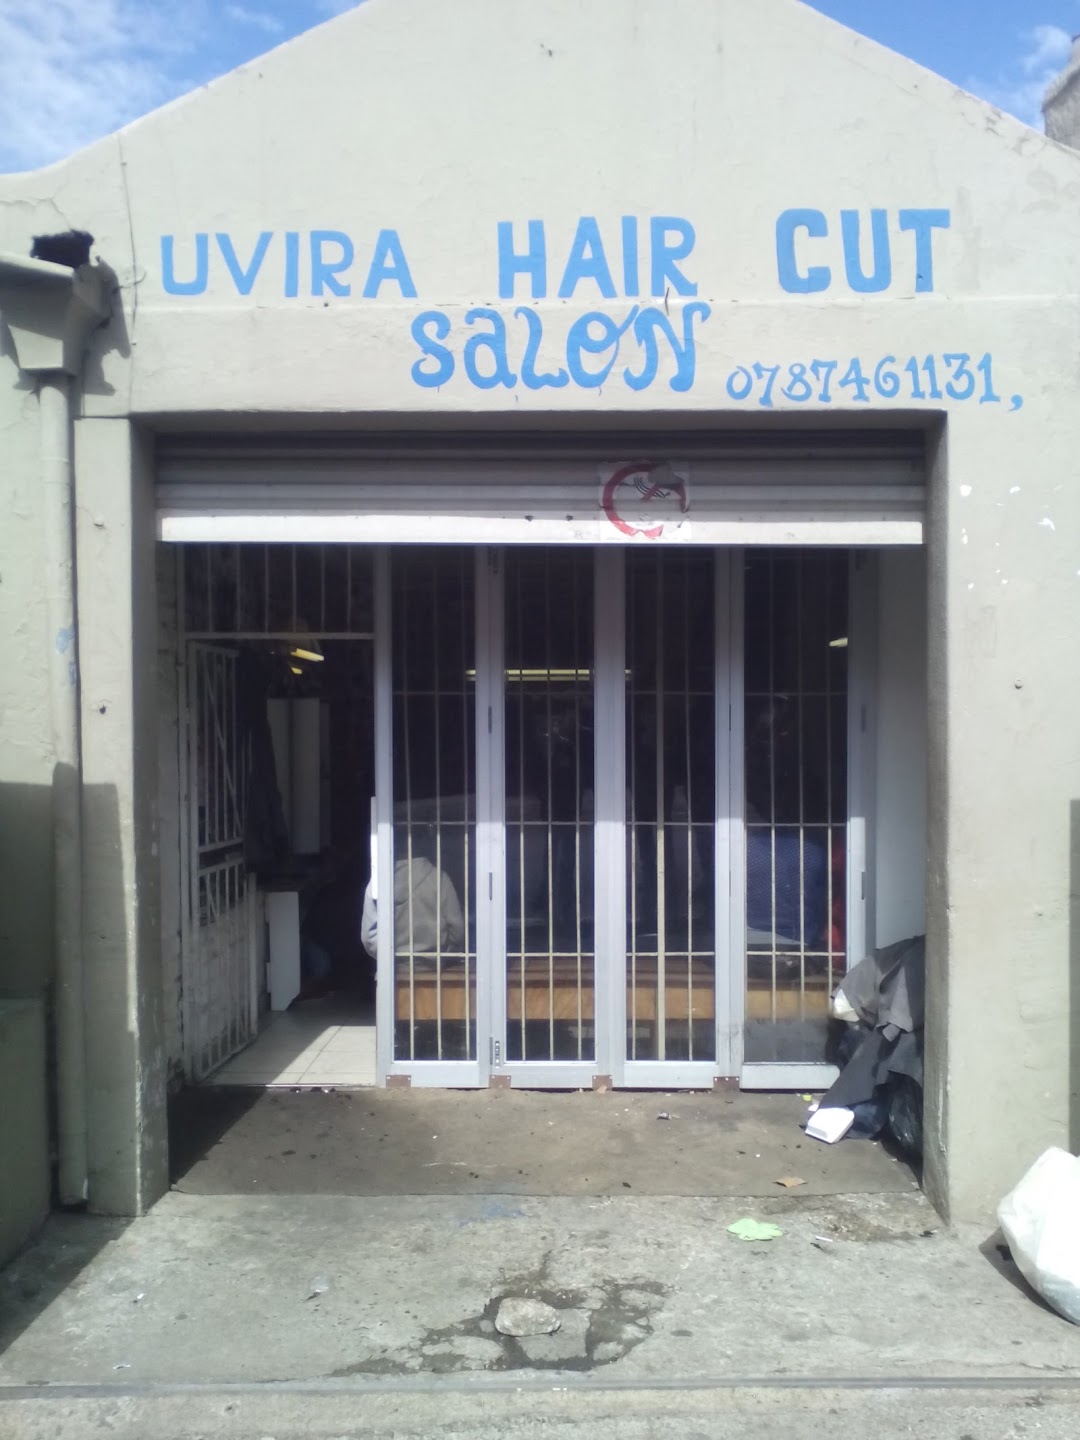 Uvira Hair Cut Salon